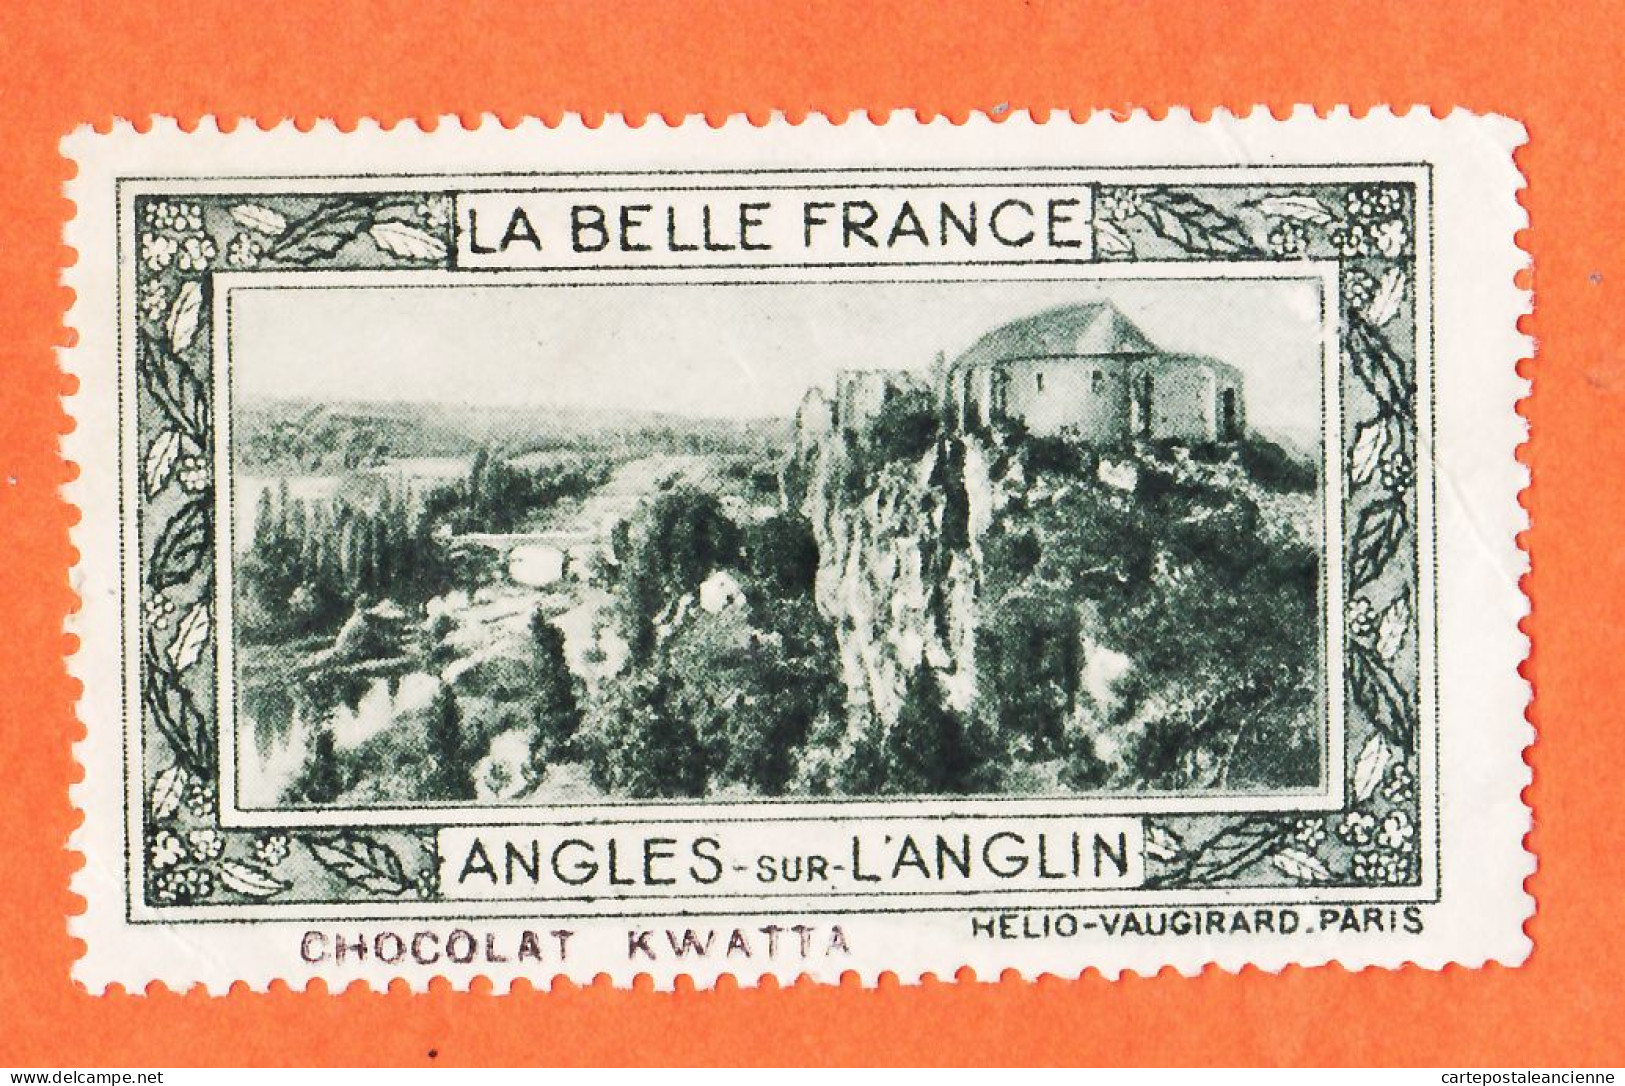 36975 / ⭐ ◉ LANGLES-sur-L'ANGLIN 86-Yonne Pub Chocolat KWATTA Vignette Collection BELLE FRANCE HELIO-VAUGIRARD - Turismo (Viñetas)